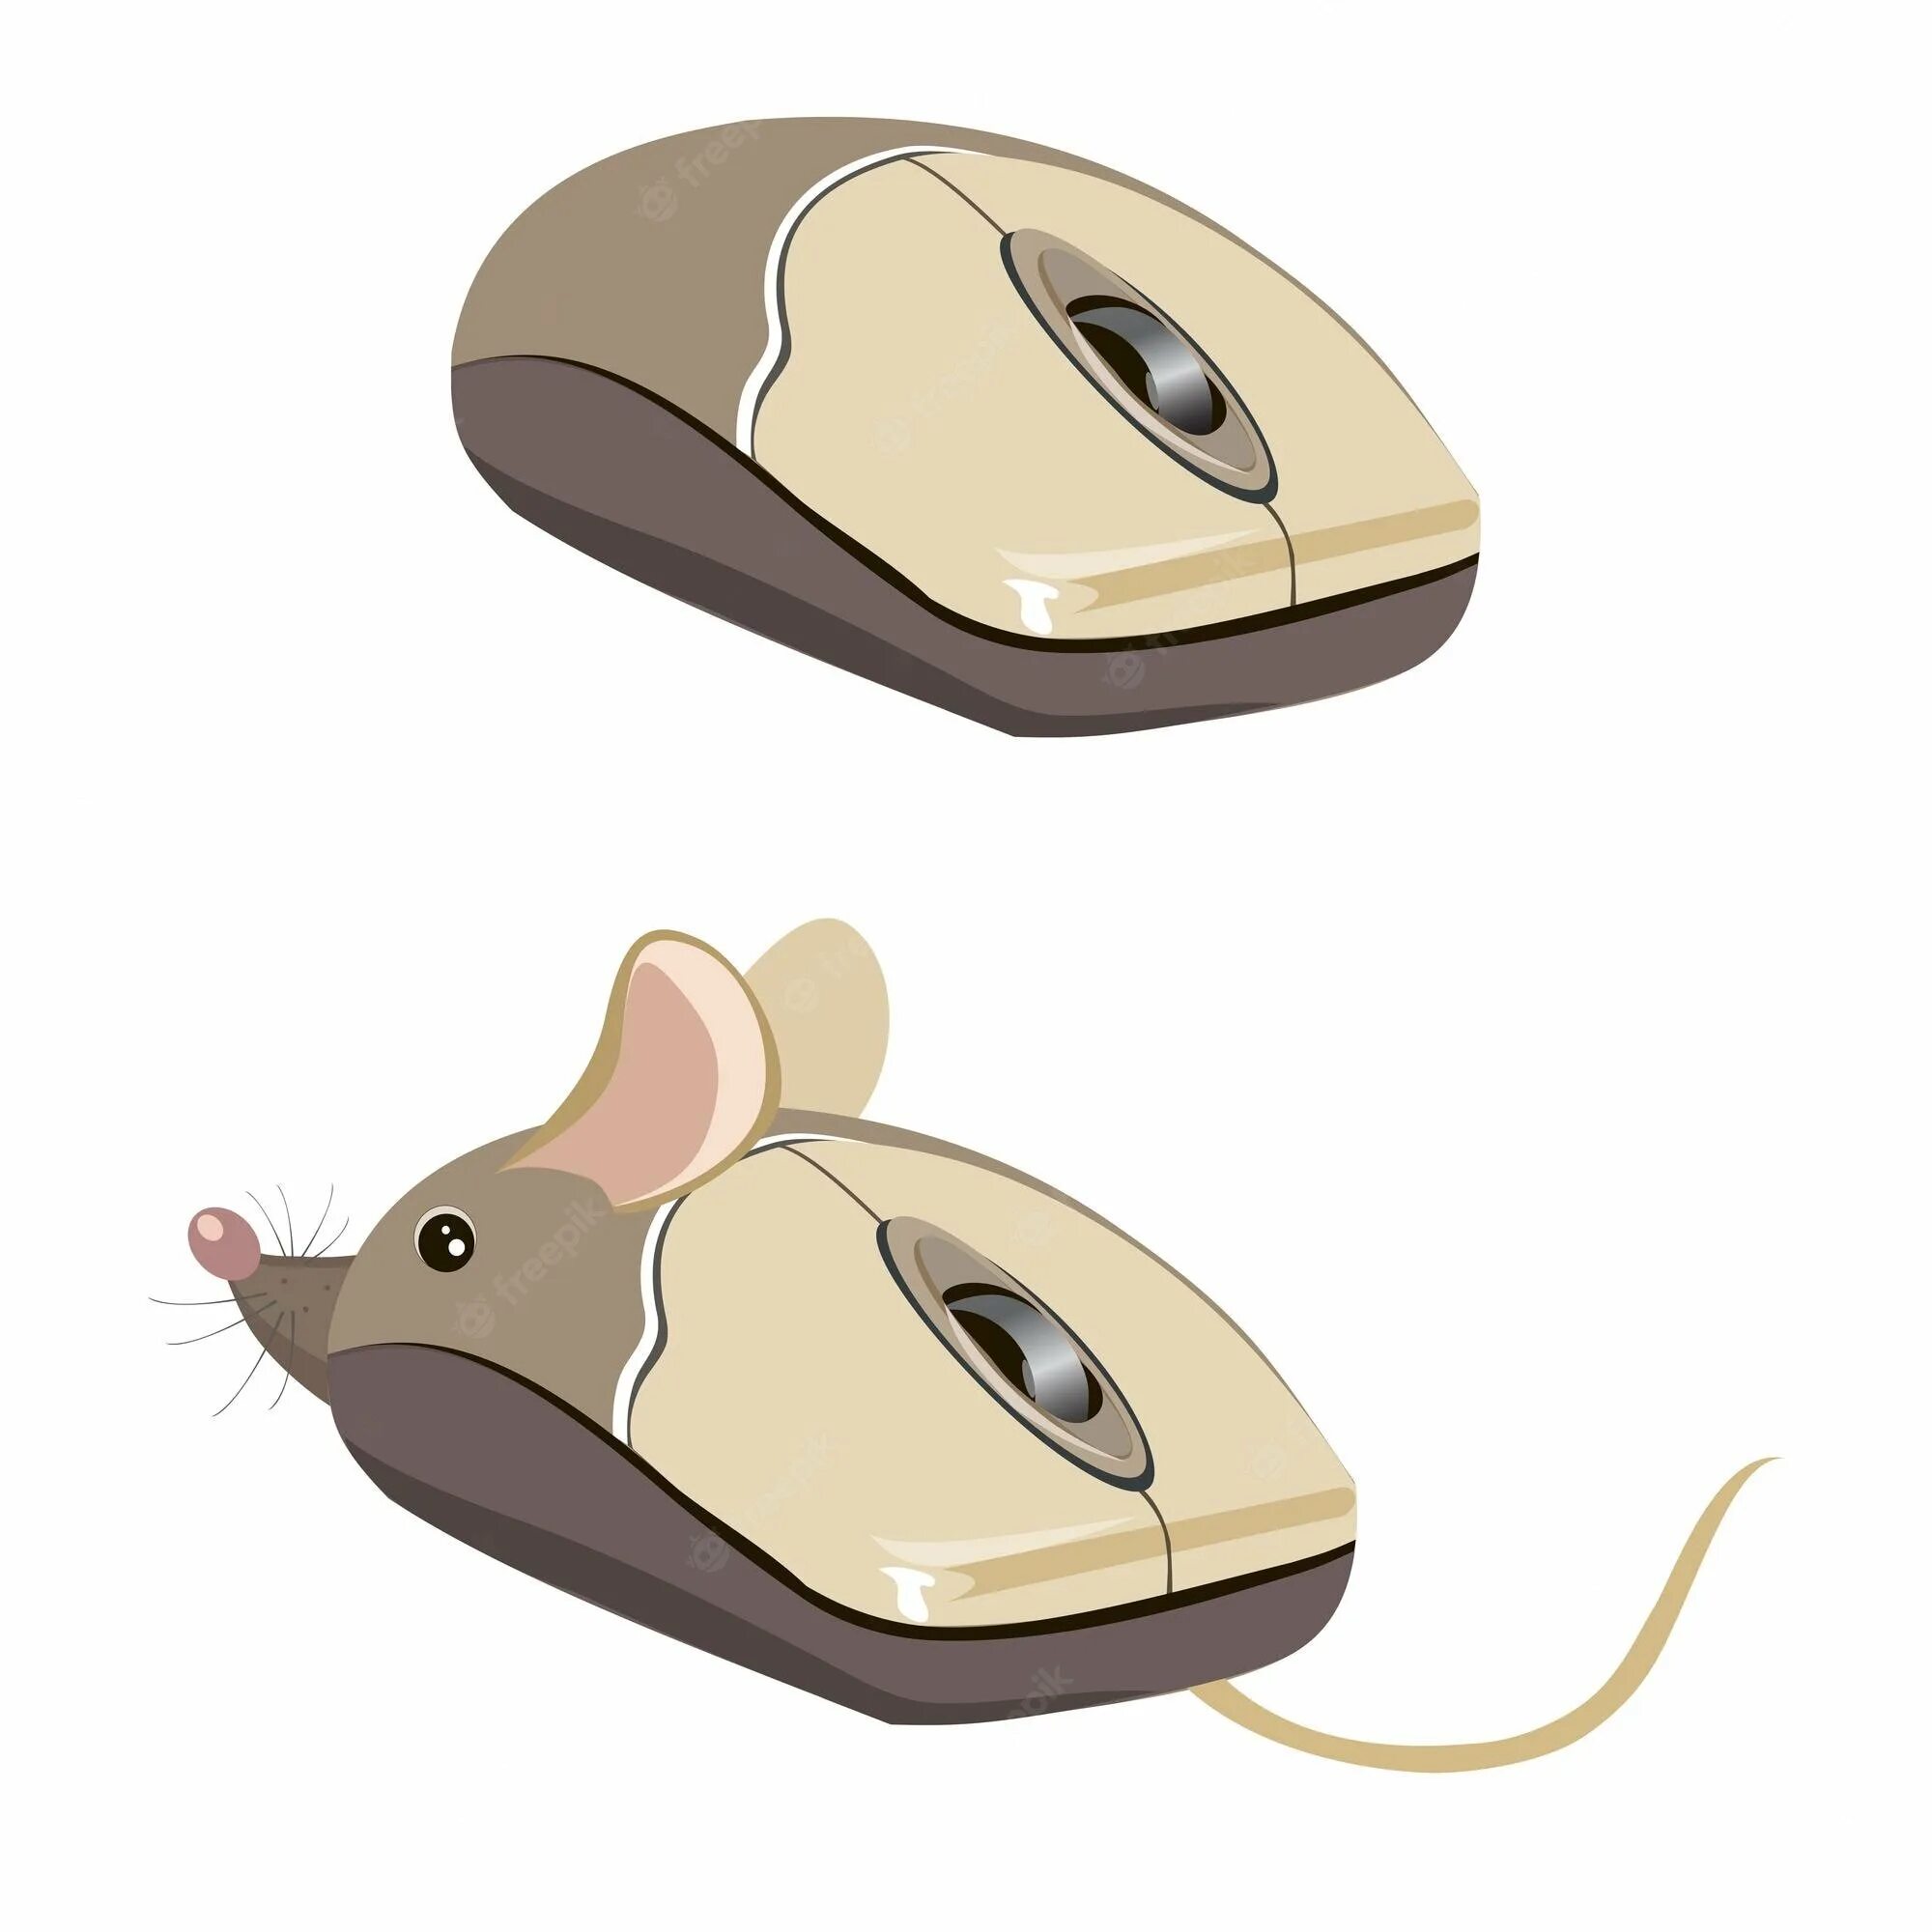 Компьютерная мышь рисунок. Детская компьютерная мышь. Мышка компьютерная рисунок. Изображение компьютерной мыши.